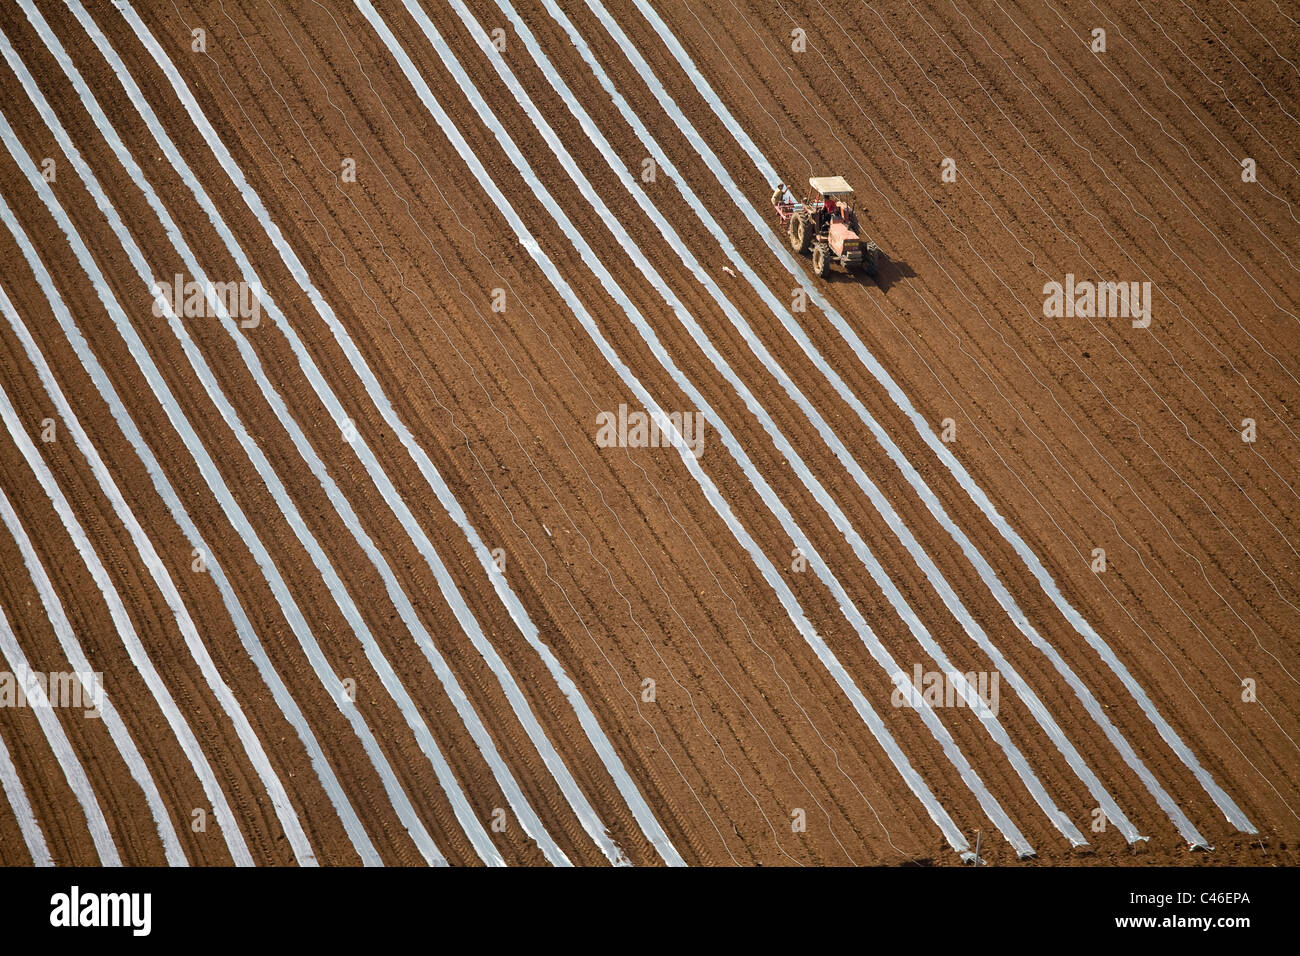 Fotografia aerea dell'agricoltura campi del Dan metropoli Foto Stock